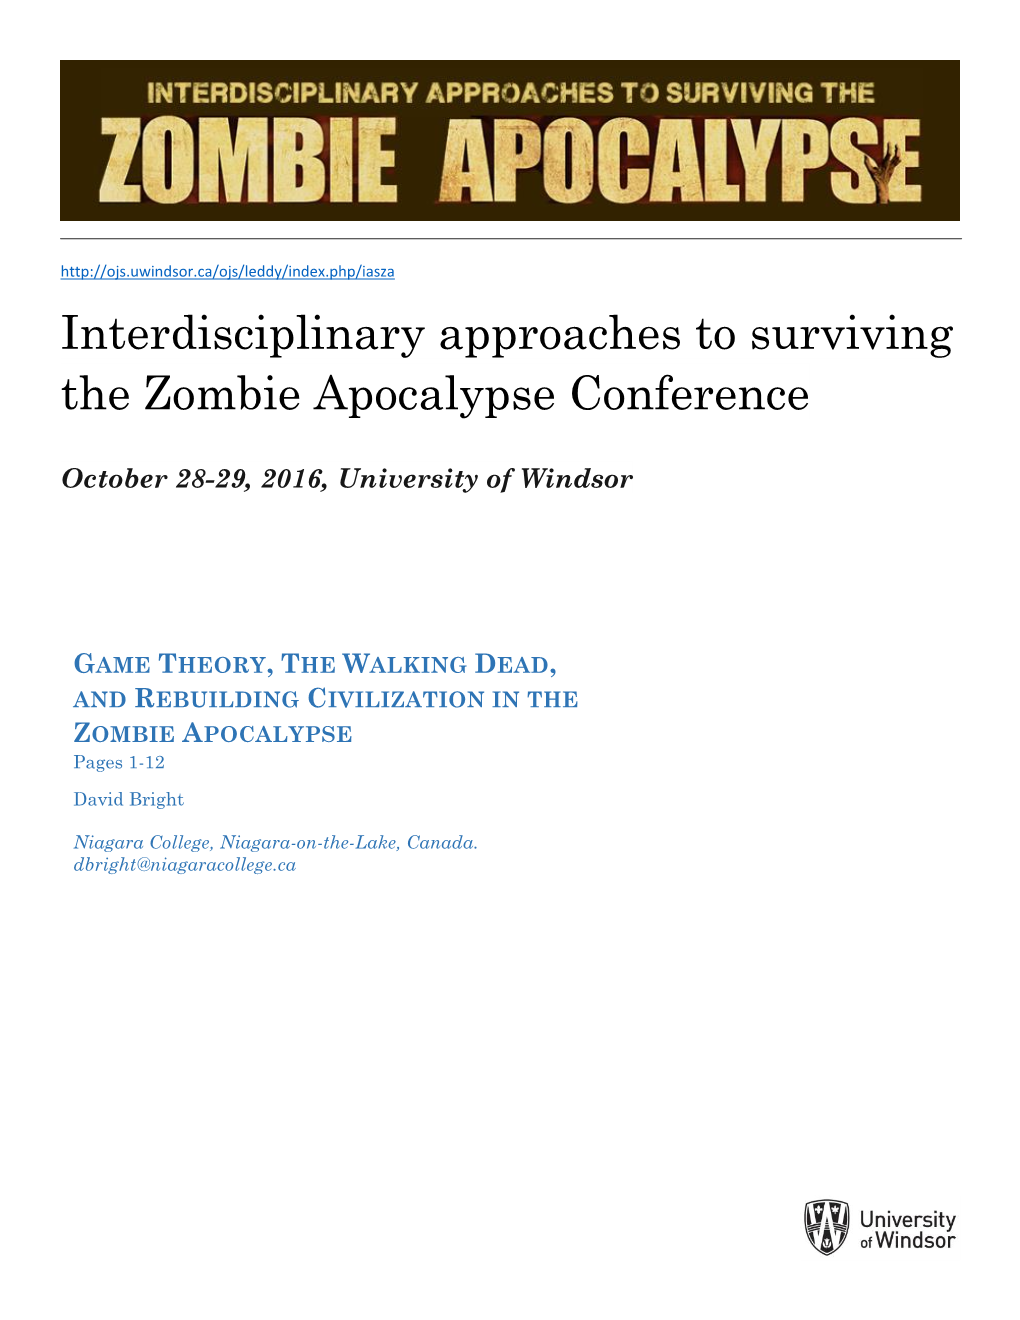 Zombie Apocalypse Conference